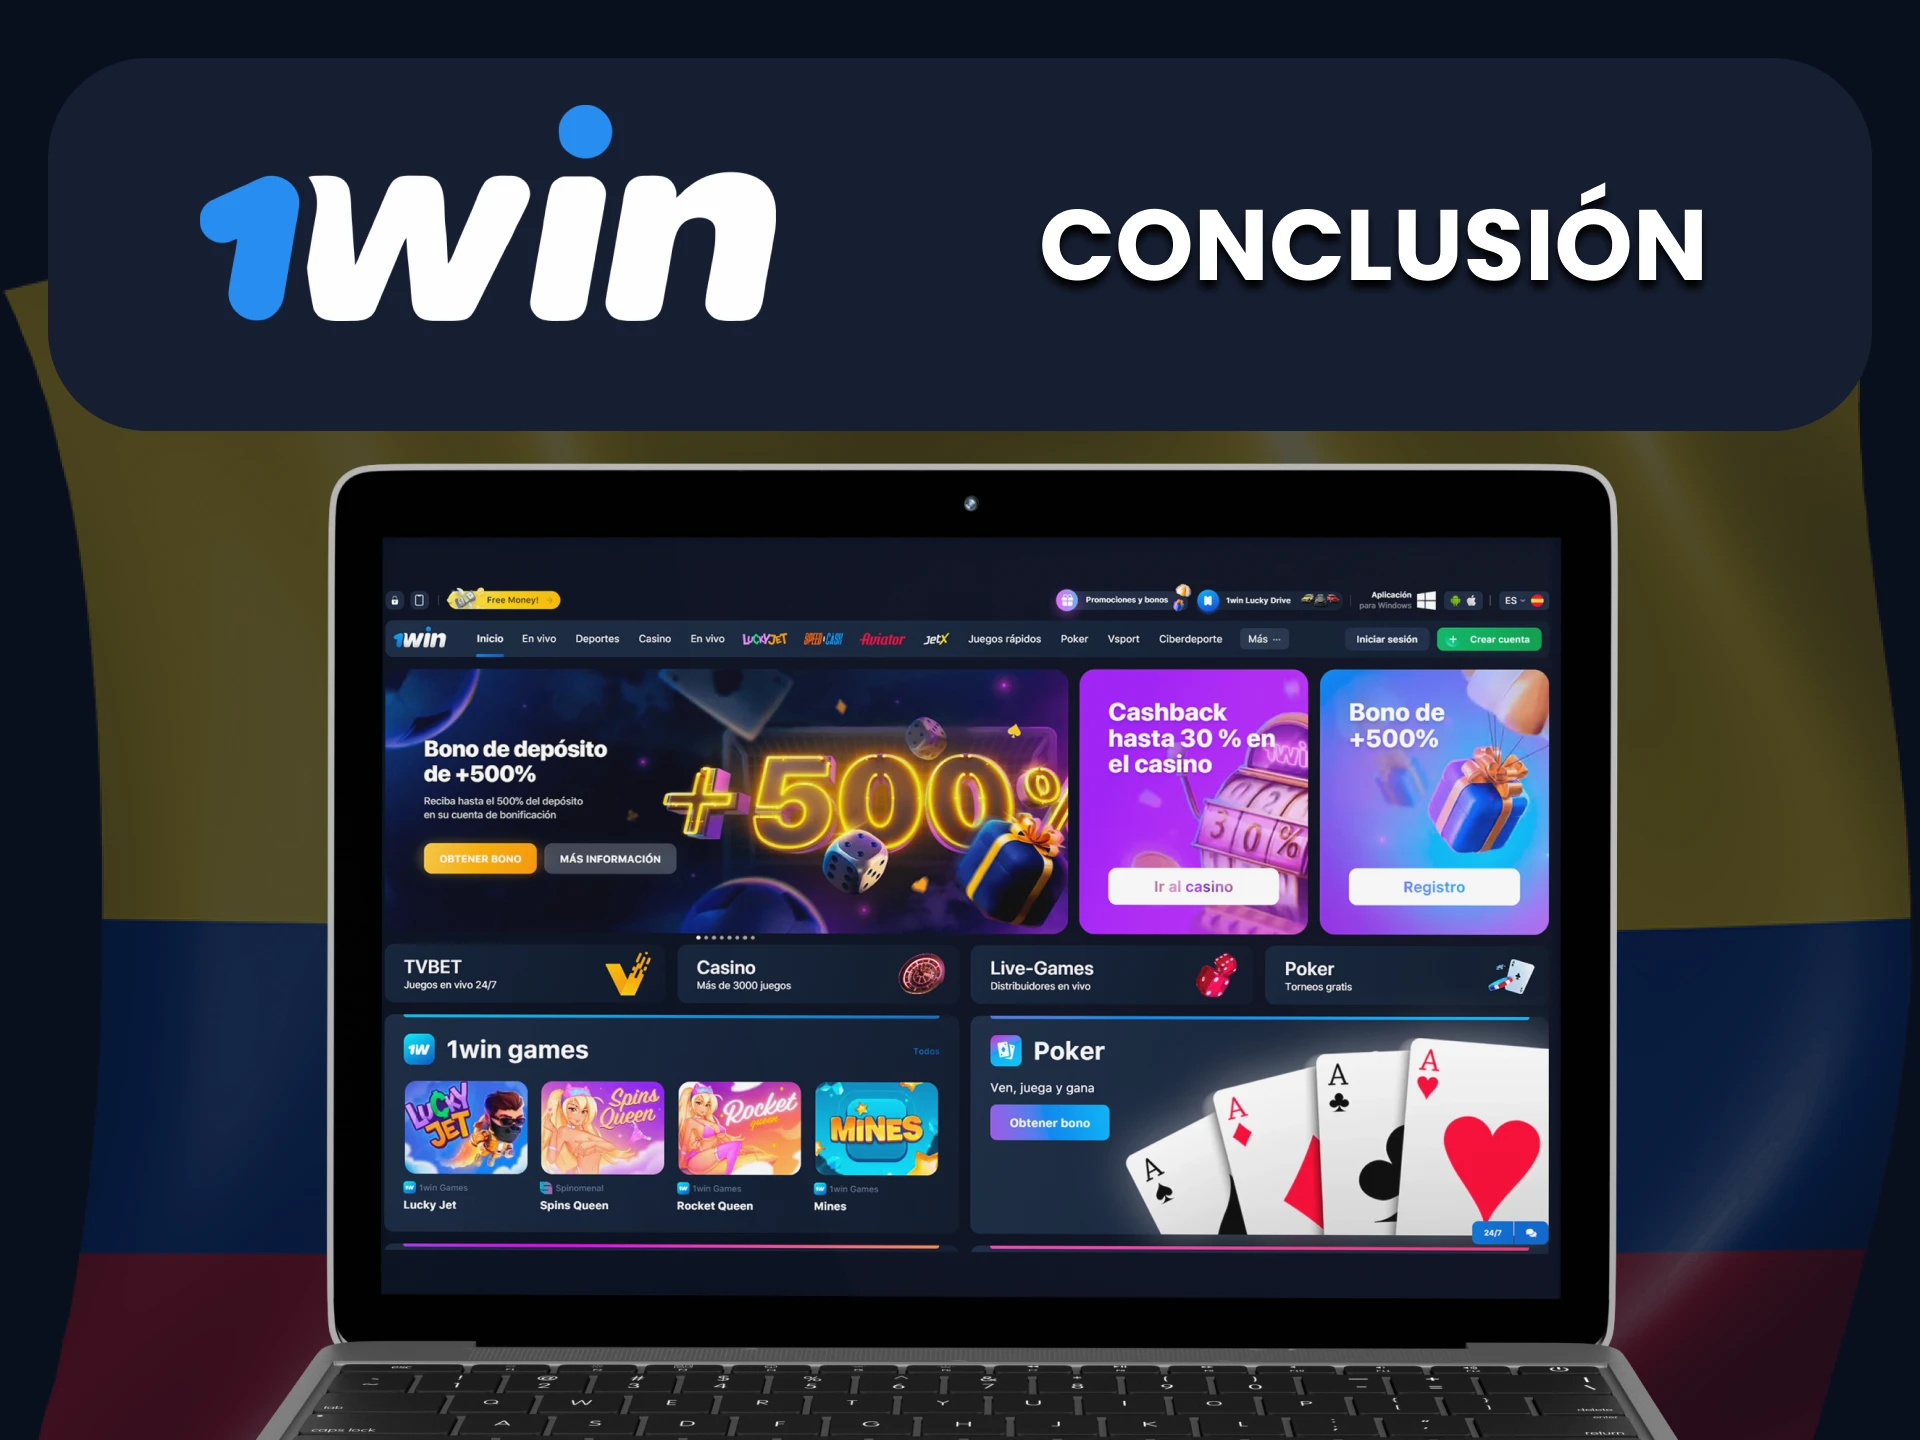 1win es ideal para apuestas y juegos para usuarios de Colombia.